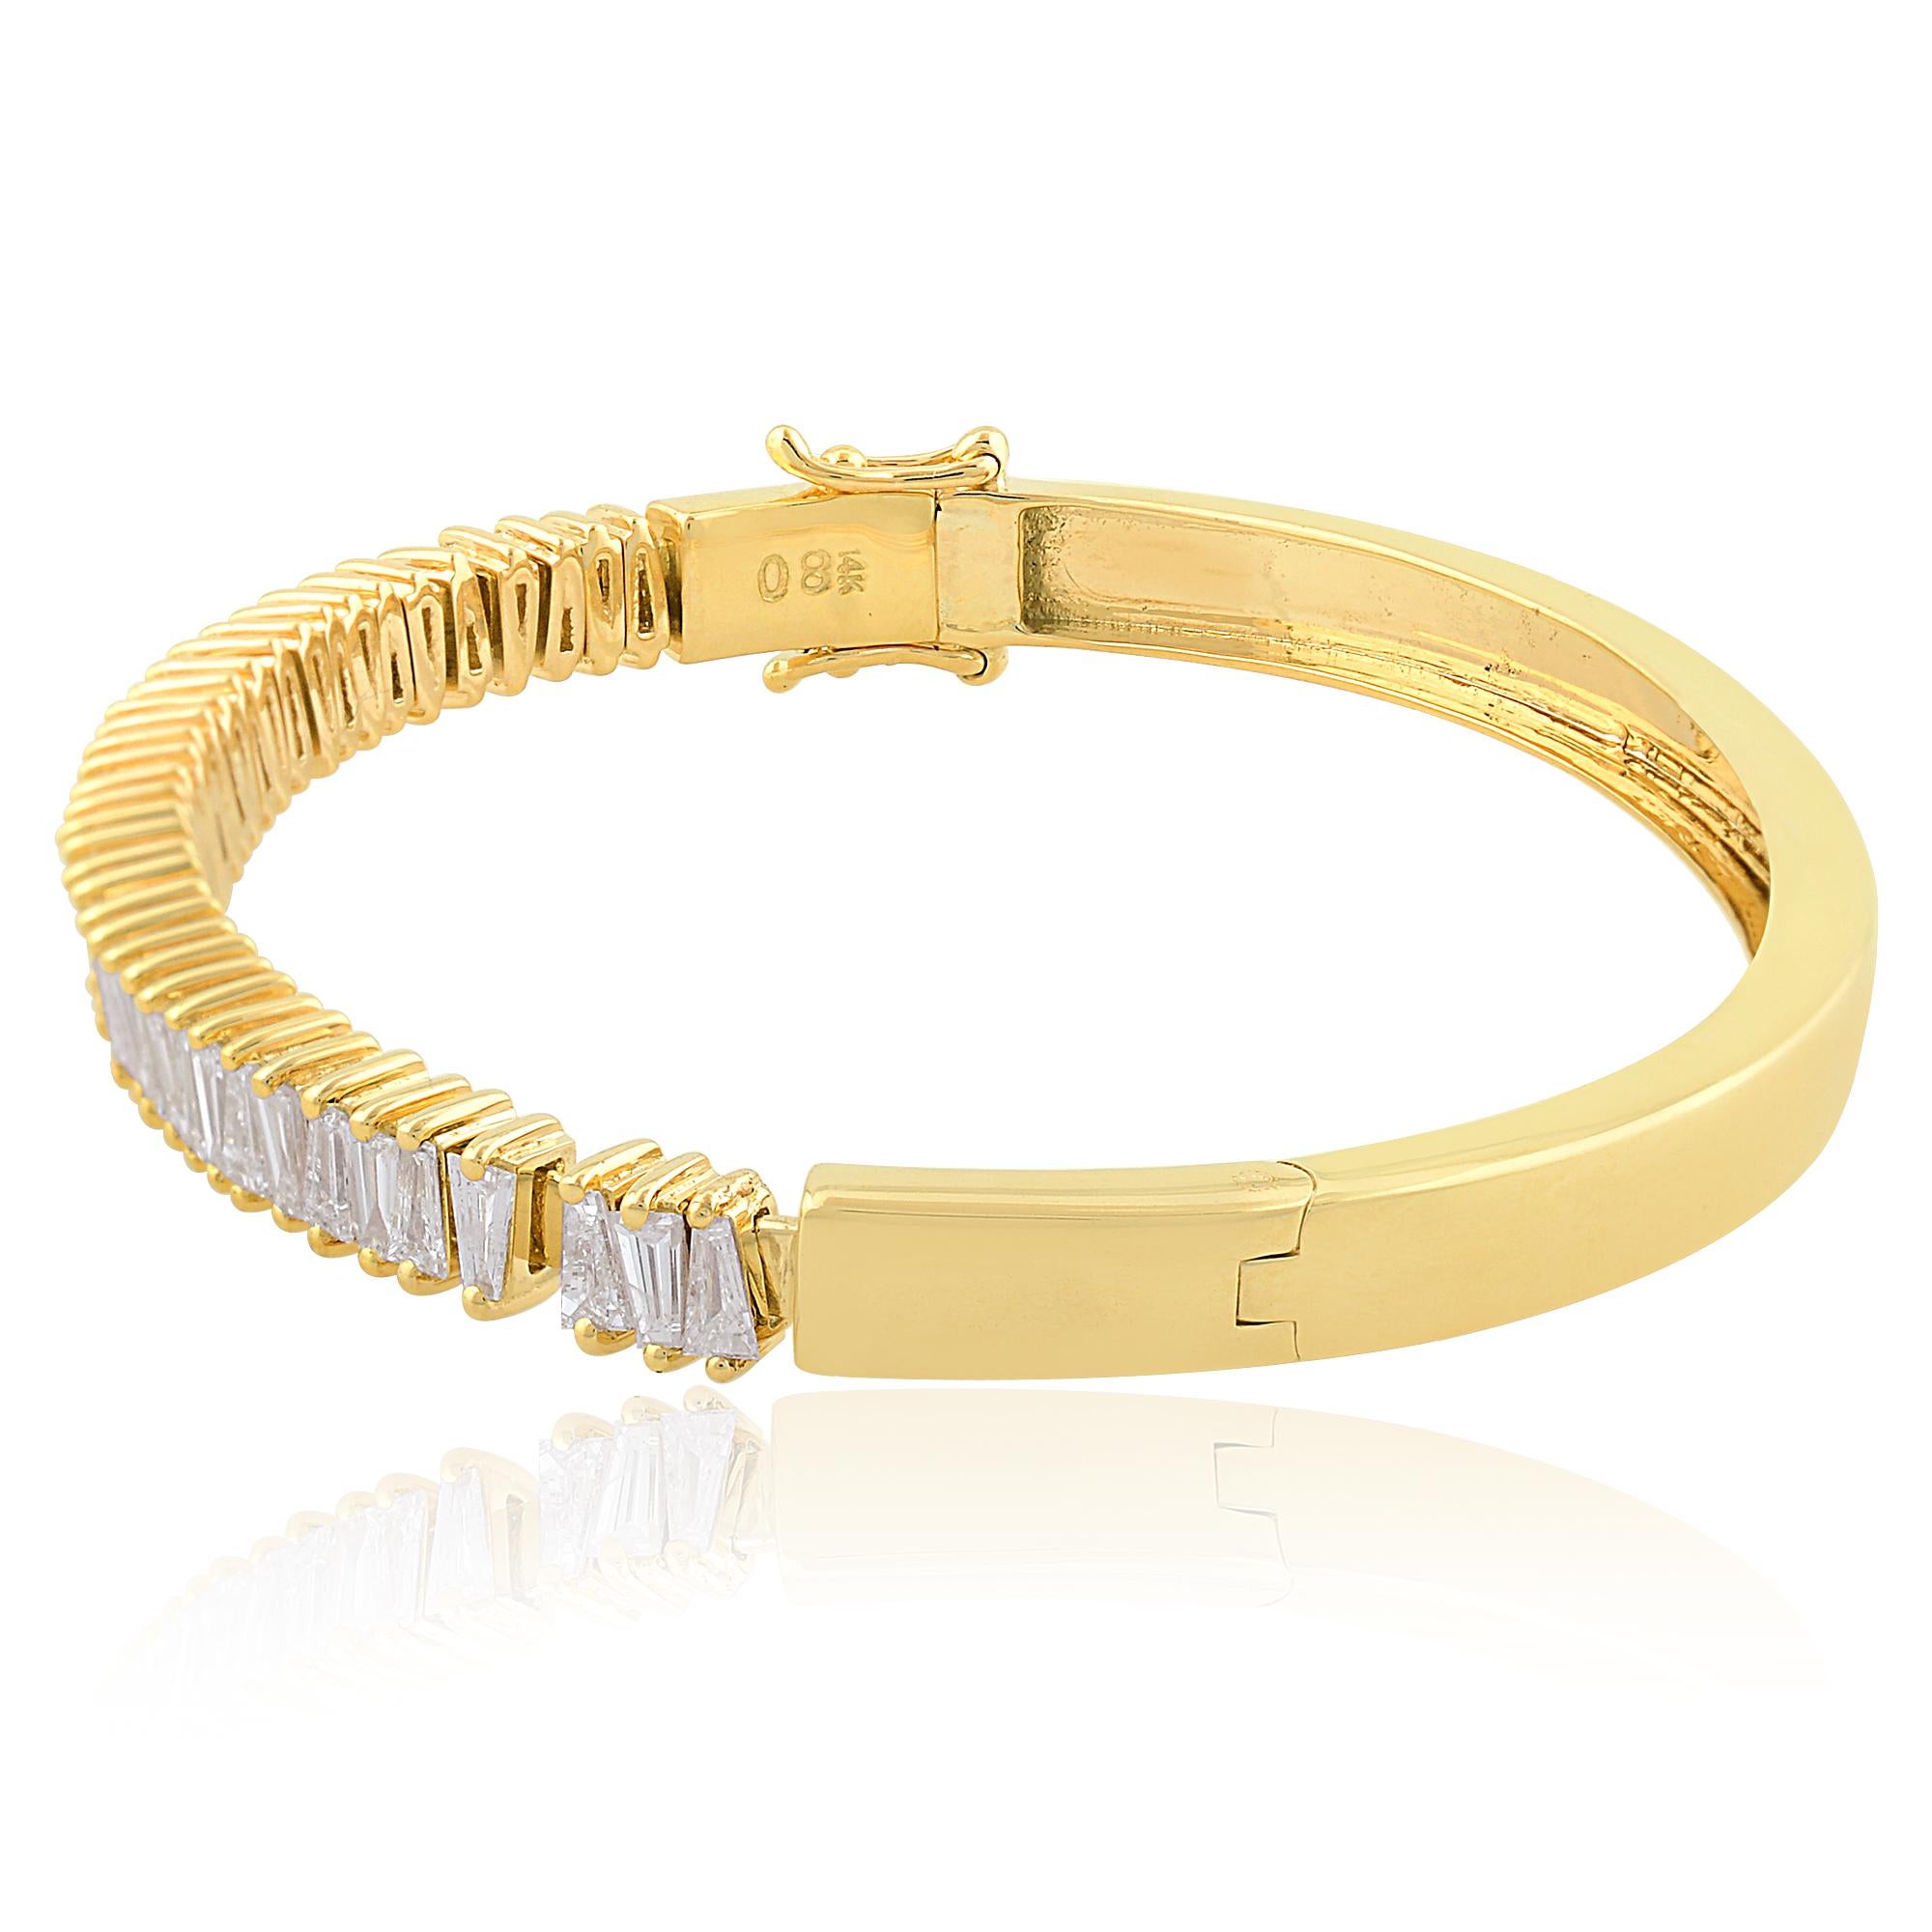 Gönnen Sie sich die zeitlose Eleganz dieses natürlichen, spitz zulaufenden Baguette-Diamantarmbands, das sorgfältig aus 14 Karat Gelbgold gefertigt ist. Dieses exquisite Schmuckstück verkörpert Raffinesse und Anmut und eignet sich perfekt, um jedem